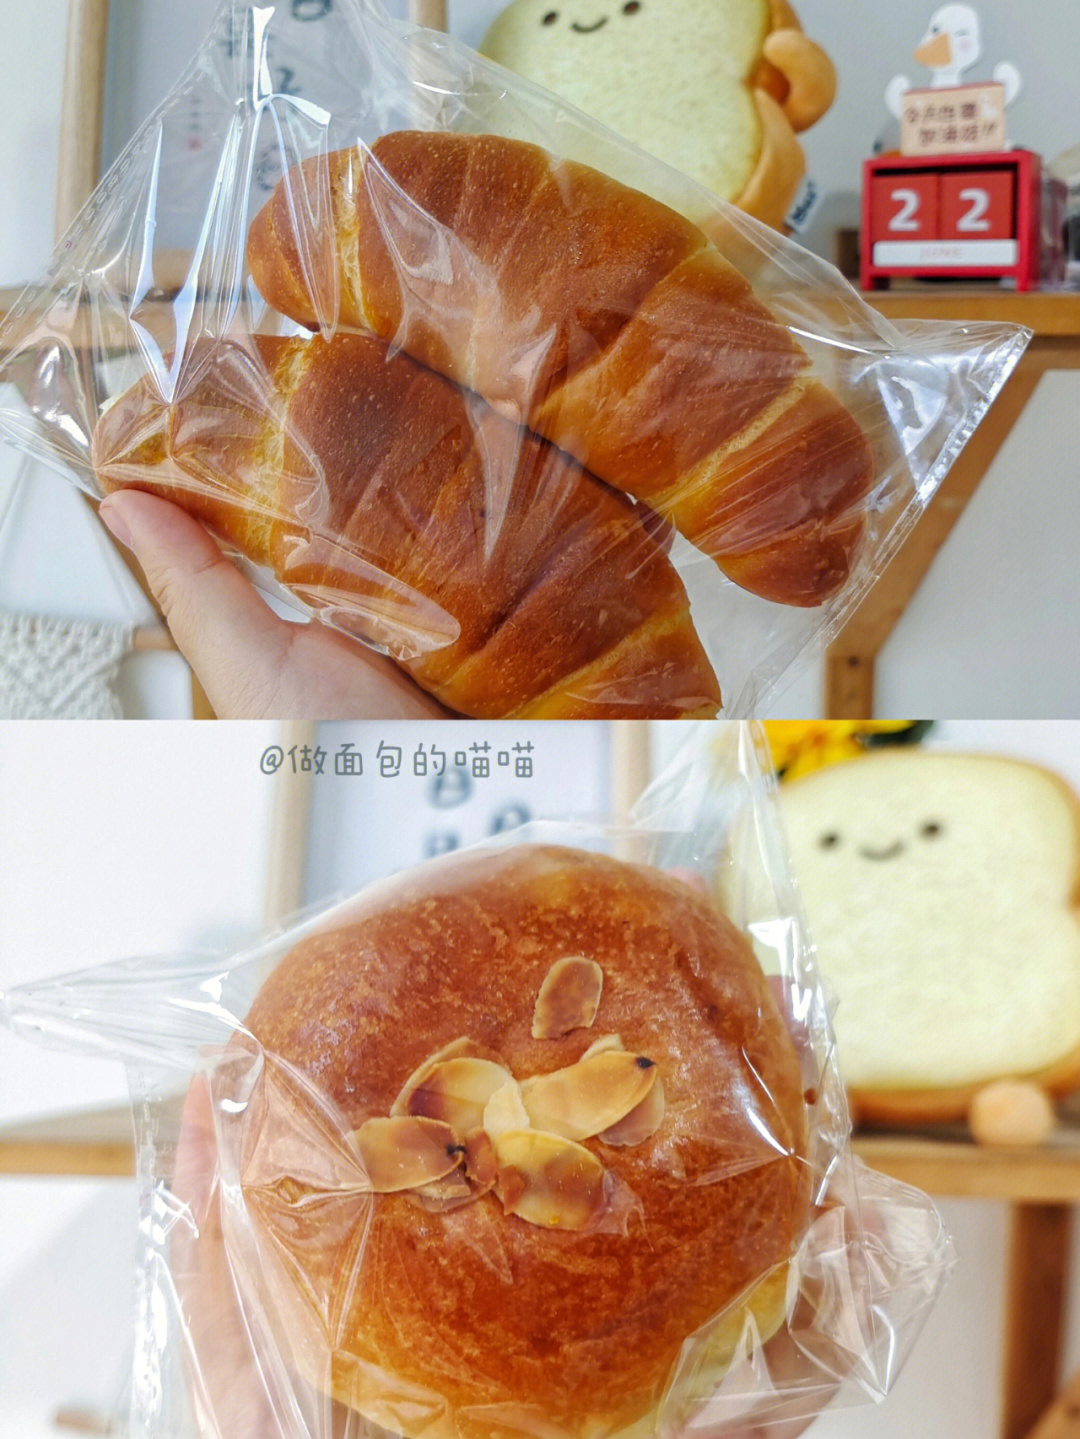 东莞社区面包店的7款基础面包04